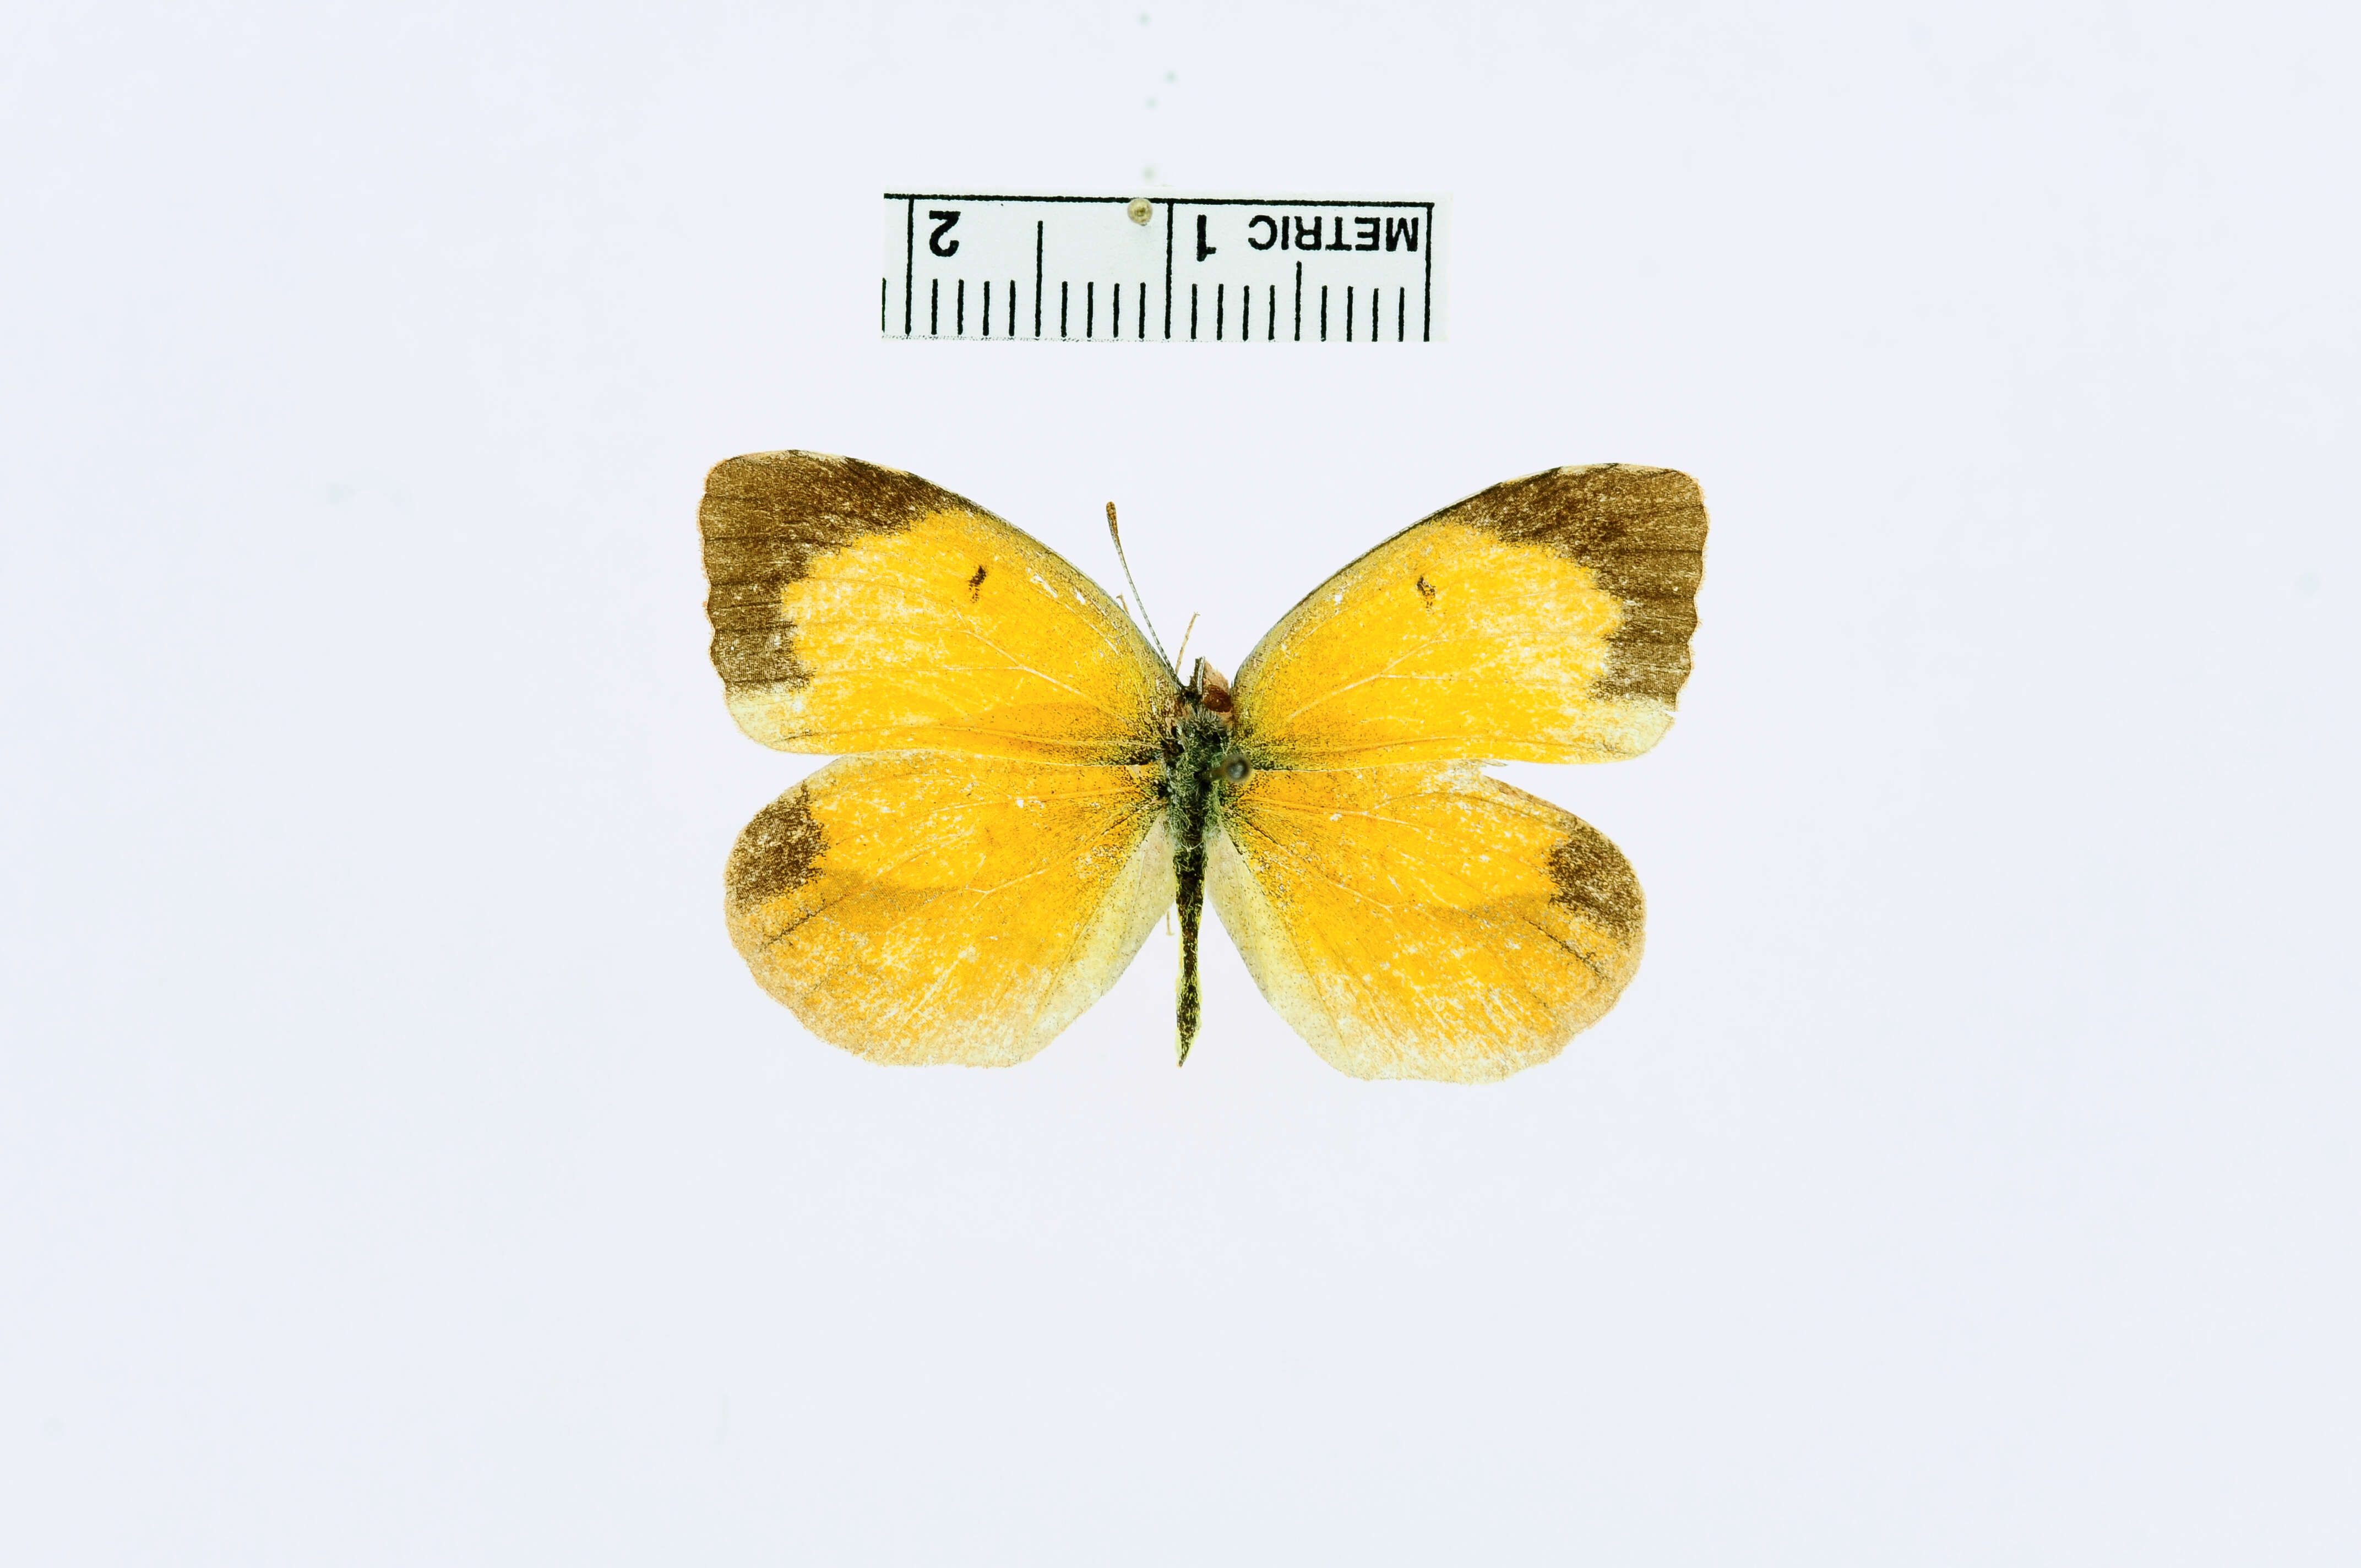 Image of butterflies